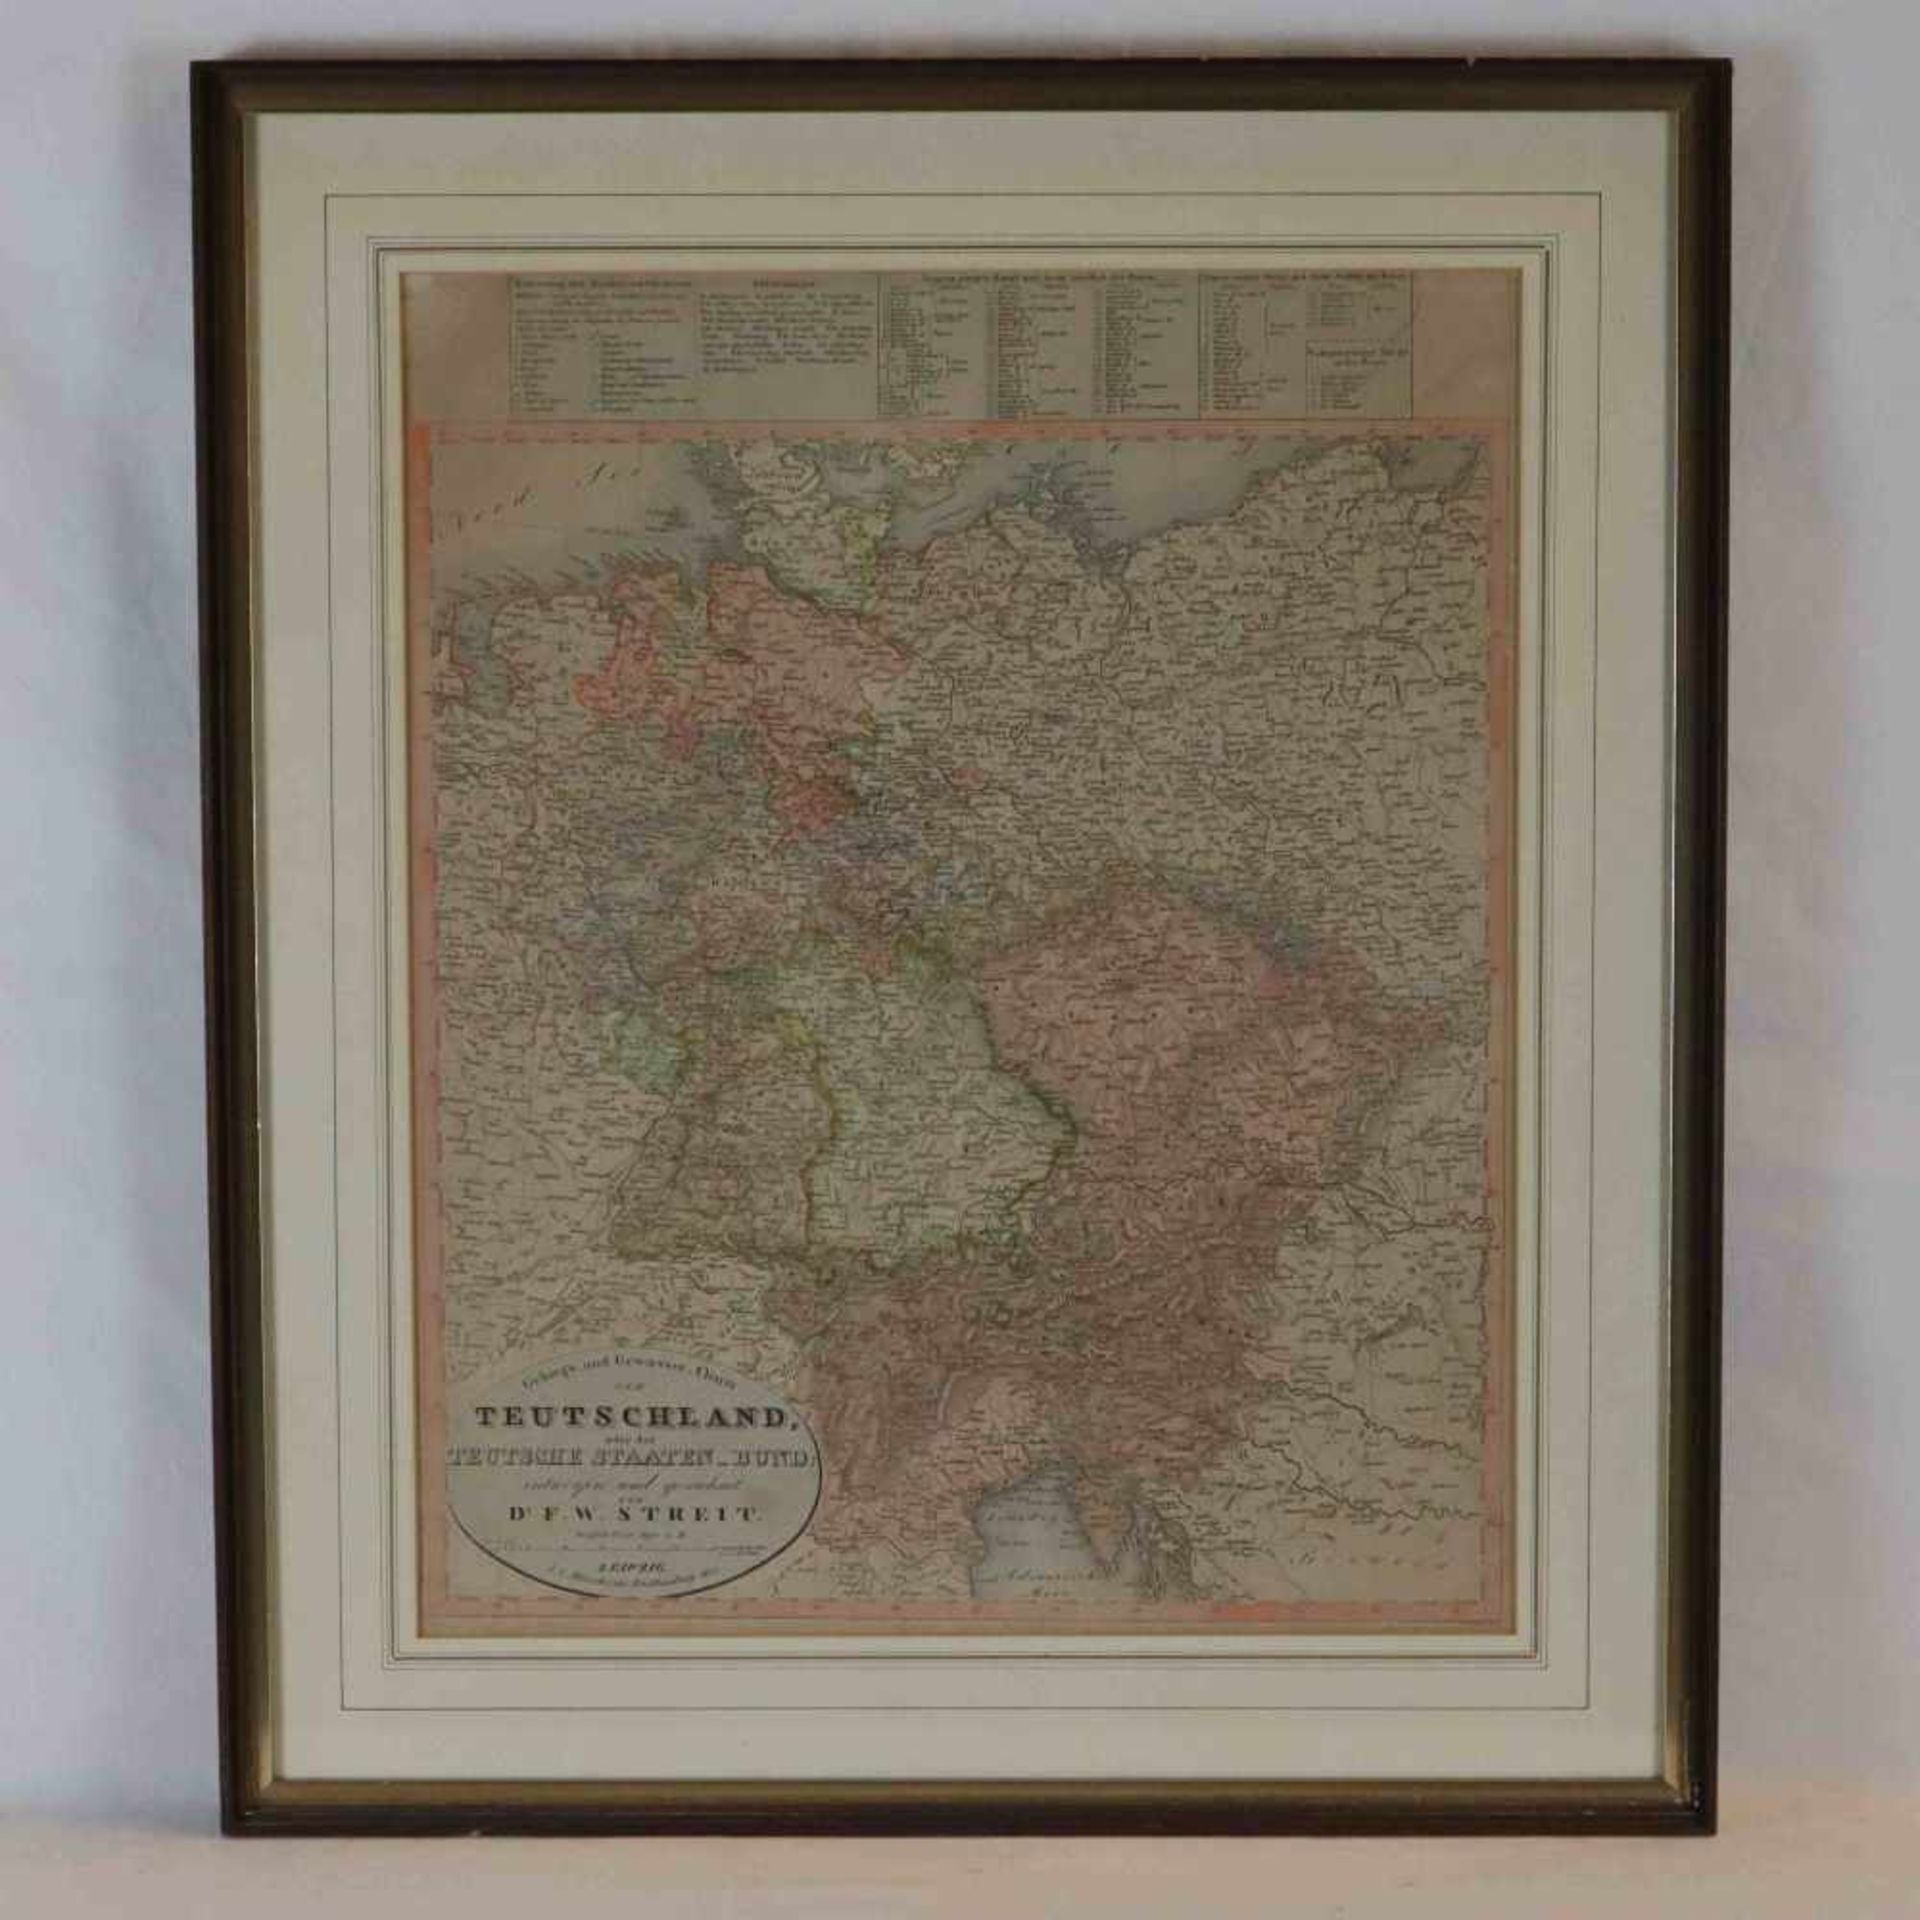 Streit, Friedrich Wilhelm (1772 - 1839) - Landkarte Deutschlands, unten links in der Kartusche